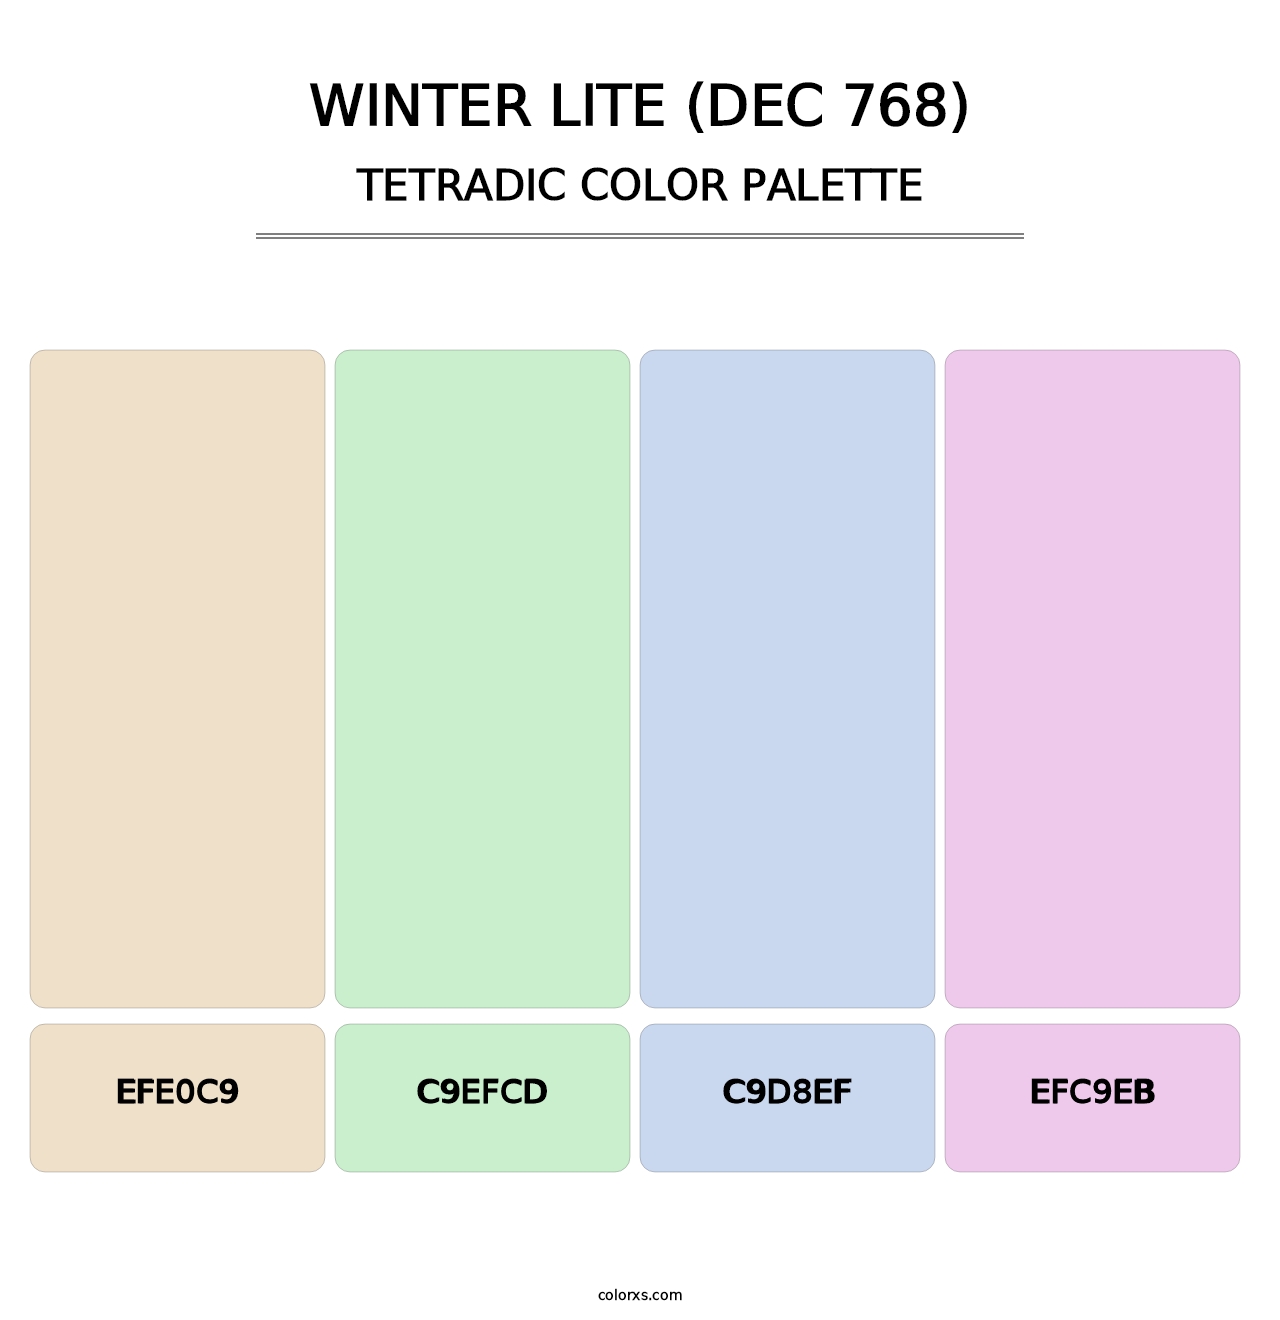 Winter Lite (DEC 768) - Tetradic Color Palette